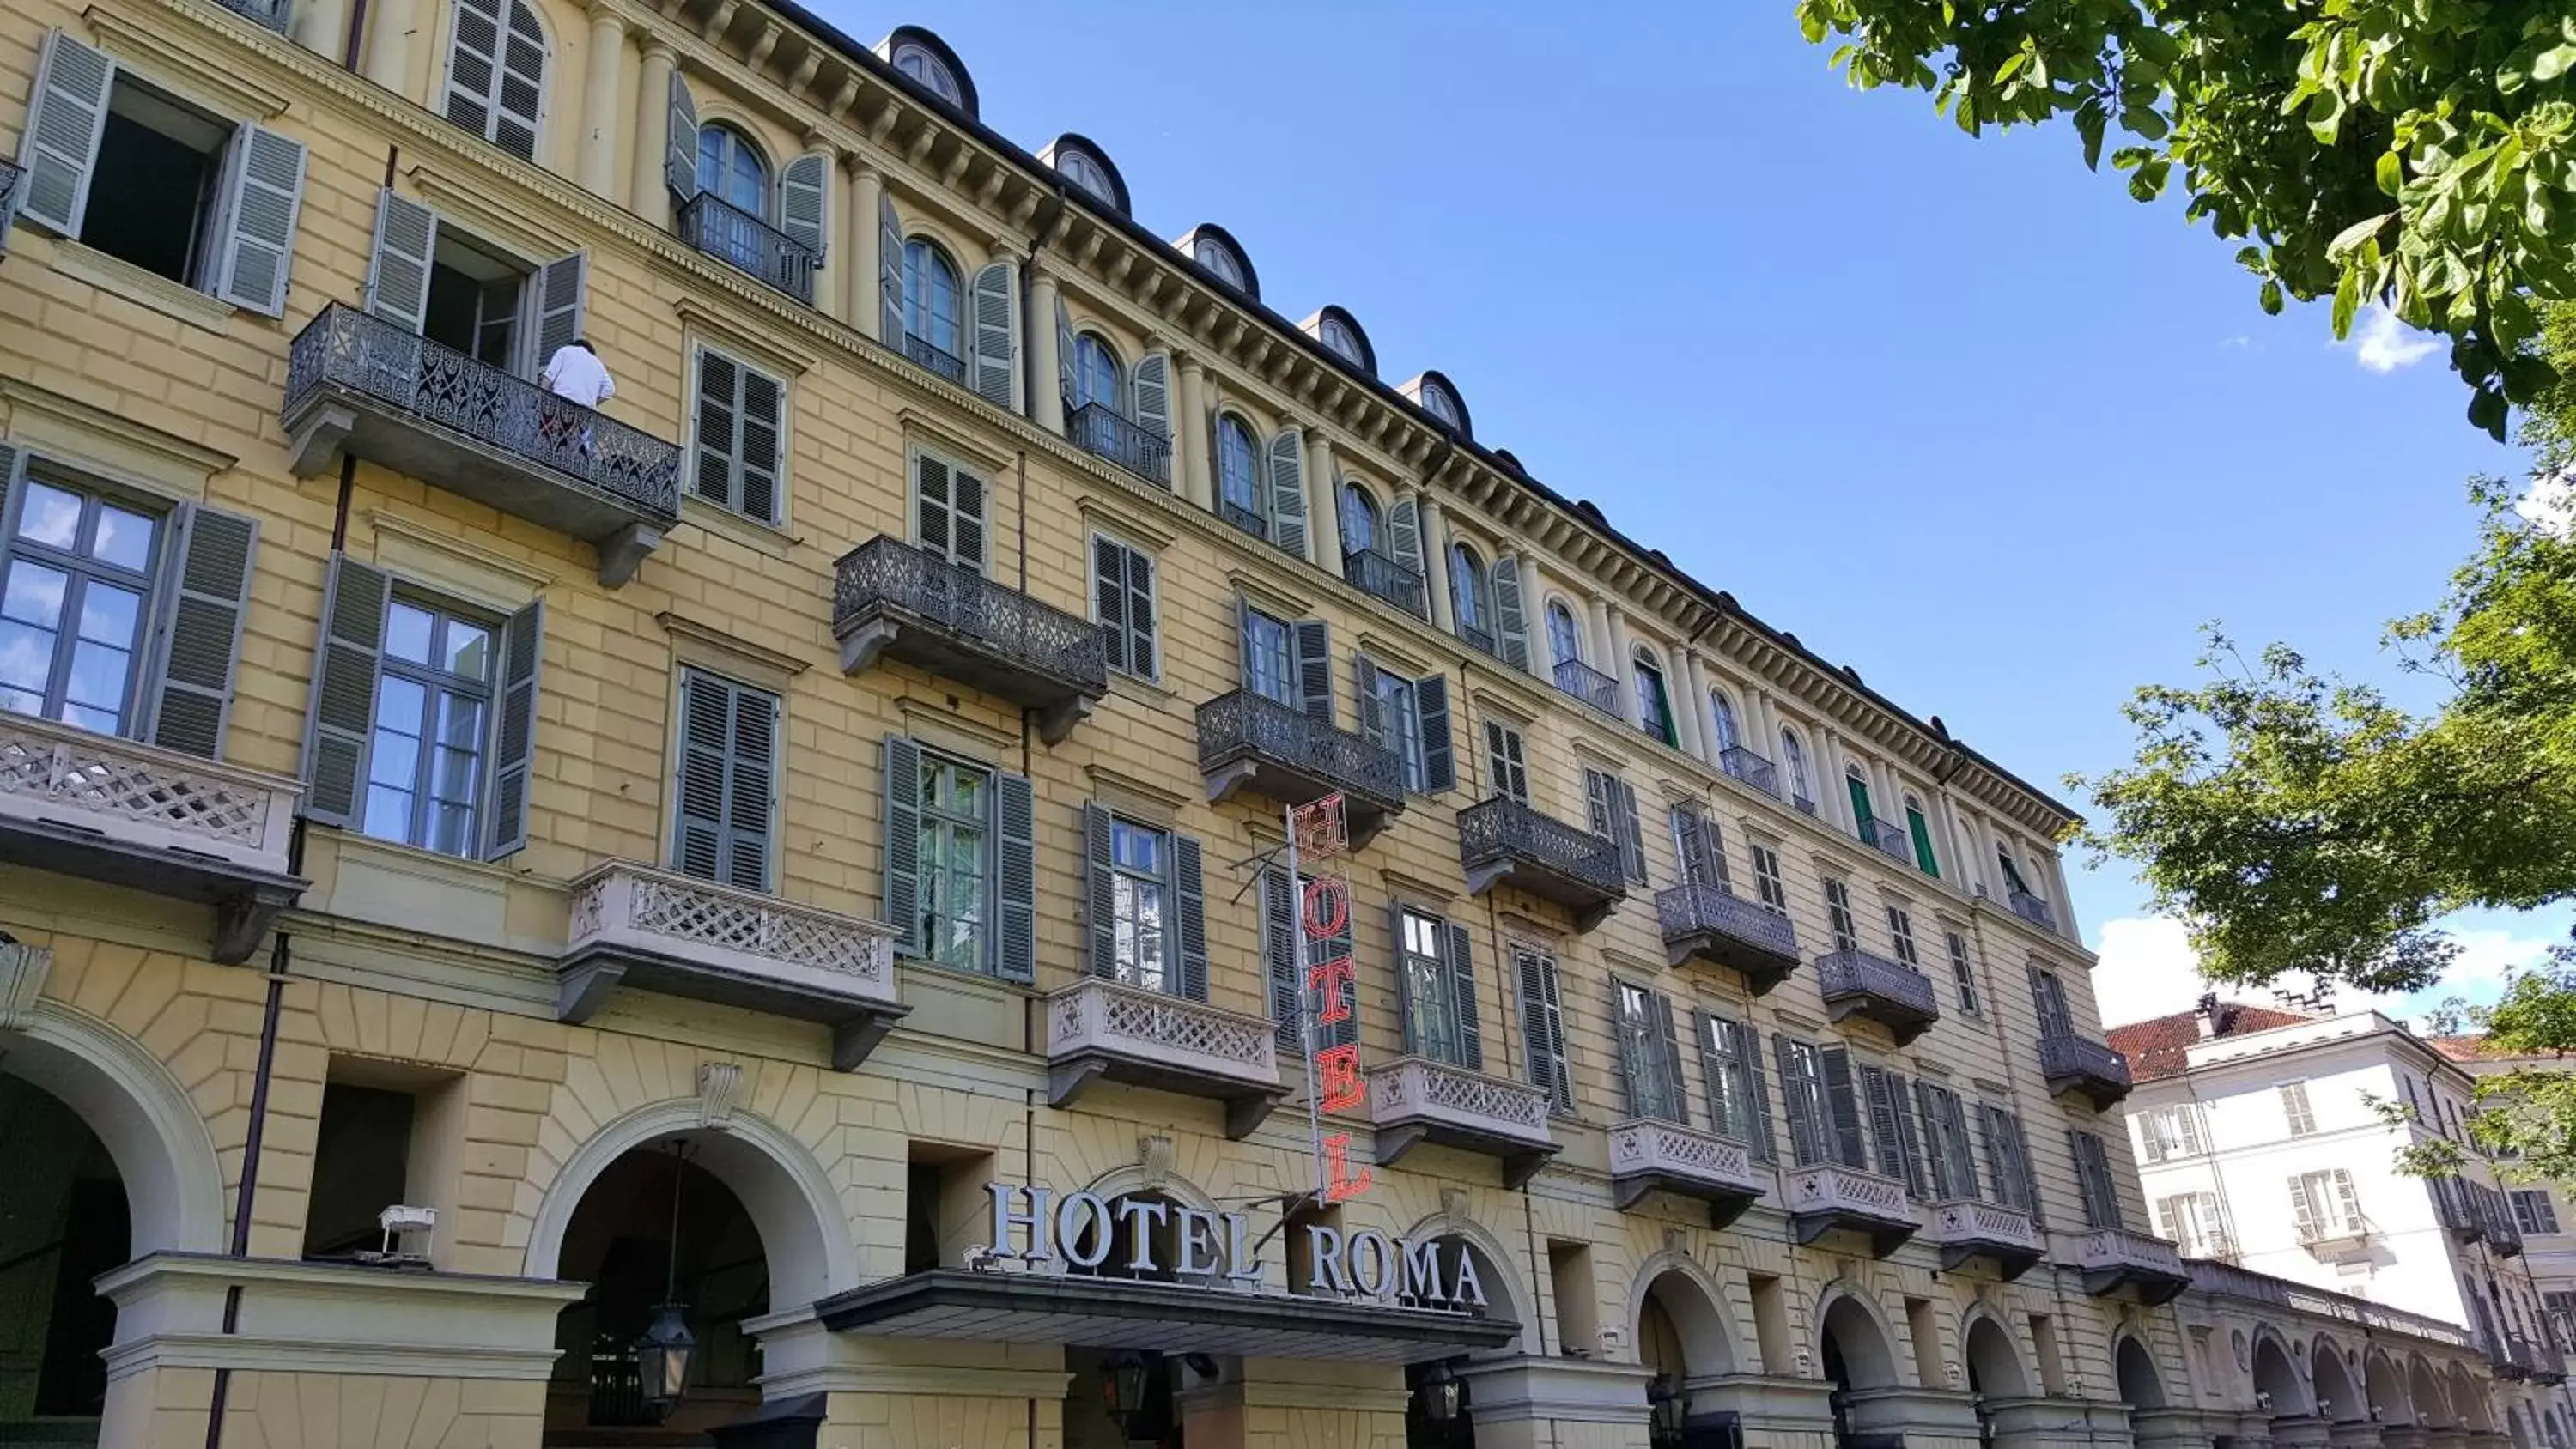 Facade/entrance in Hotel Roma e Rocca Cavour